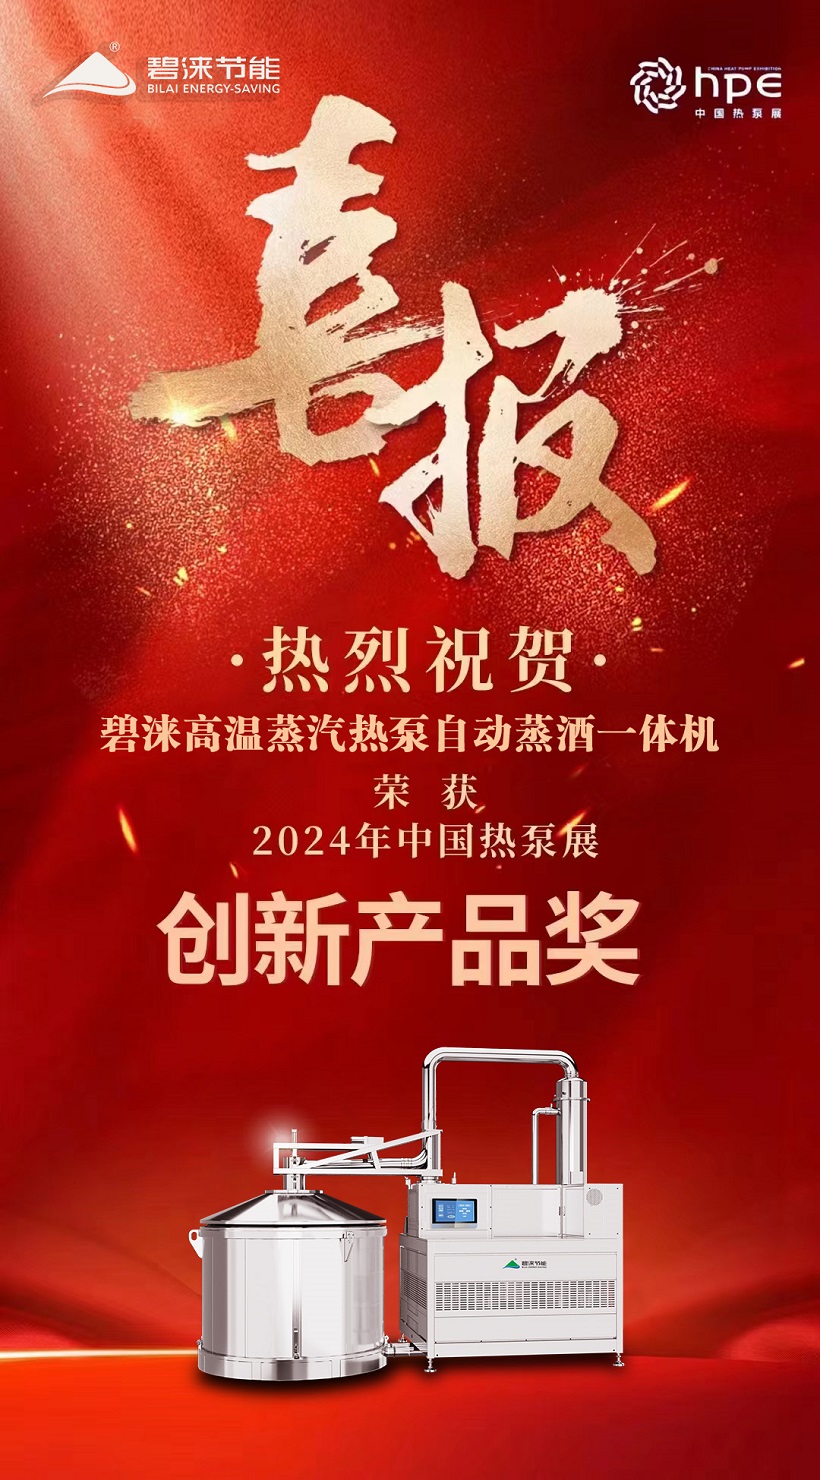 喜报！喜报！祝贺碧涞高温蒸汽热泵自动蒸酒一体机荣获中国热泵展创新奖！